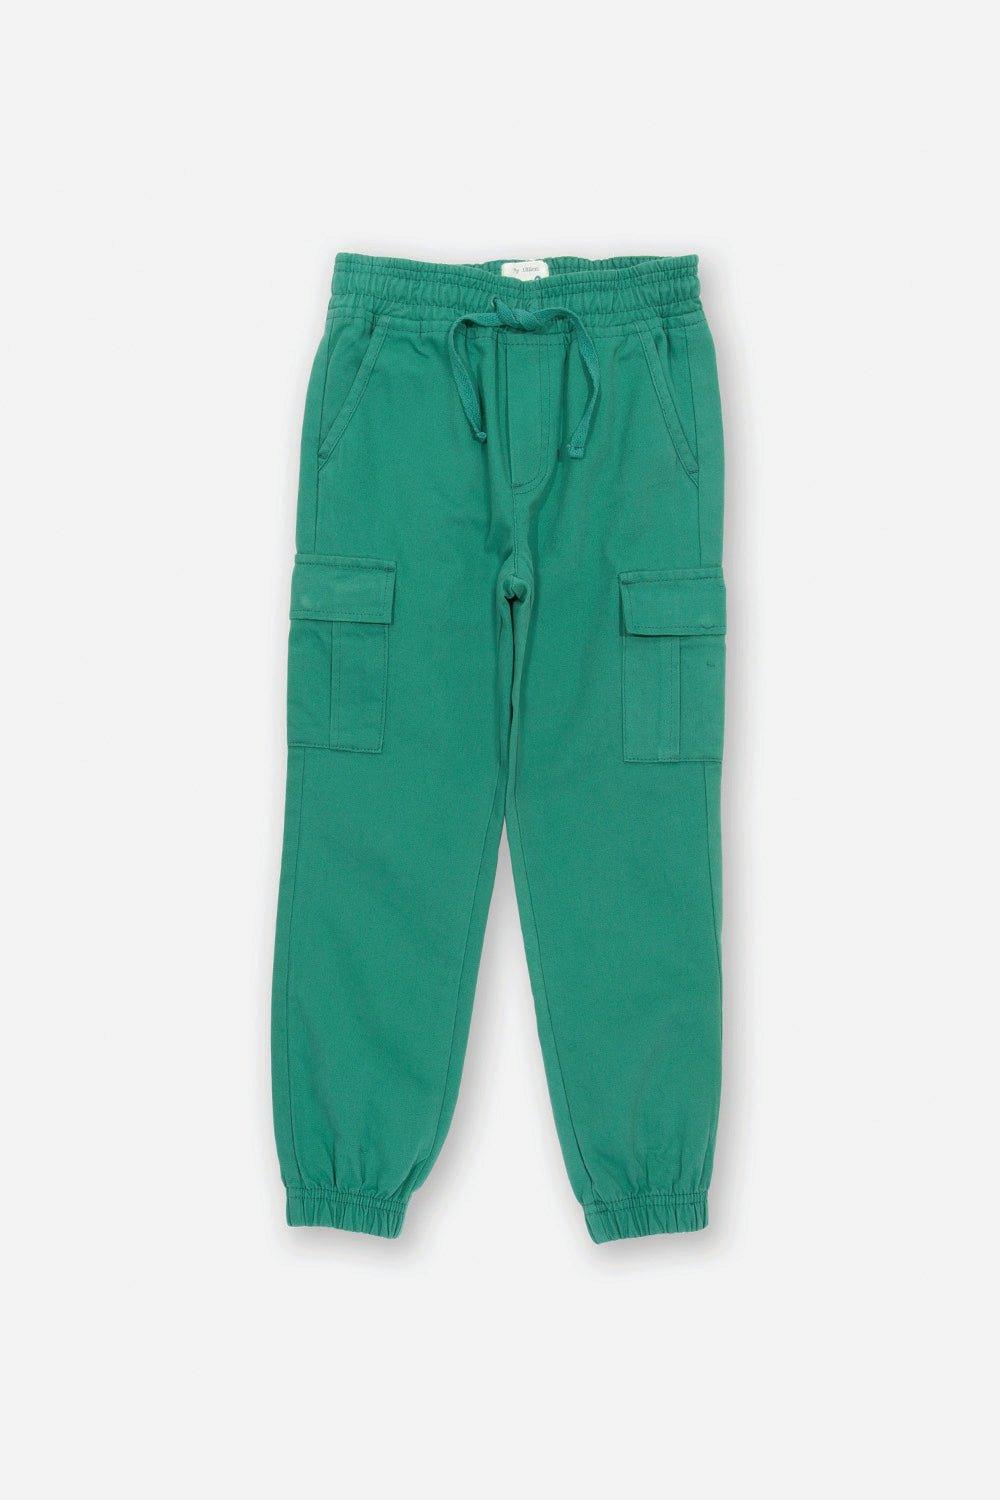 Утилиты Kite, зеленый брюки карго женские однотонные с эластичным поясом и множеством карманов